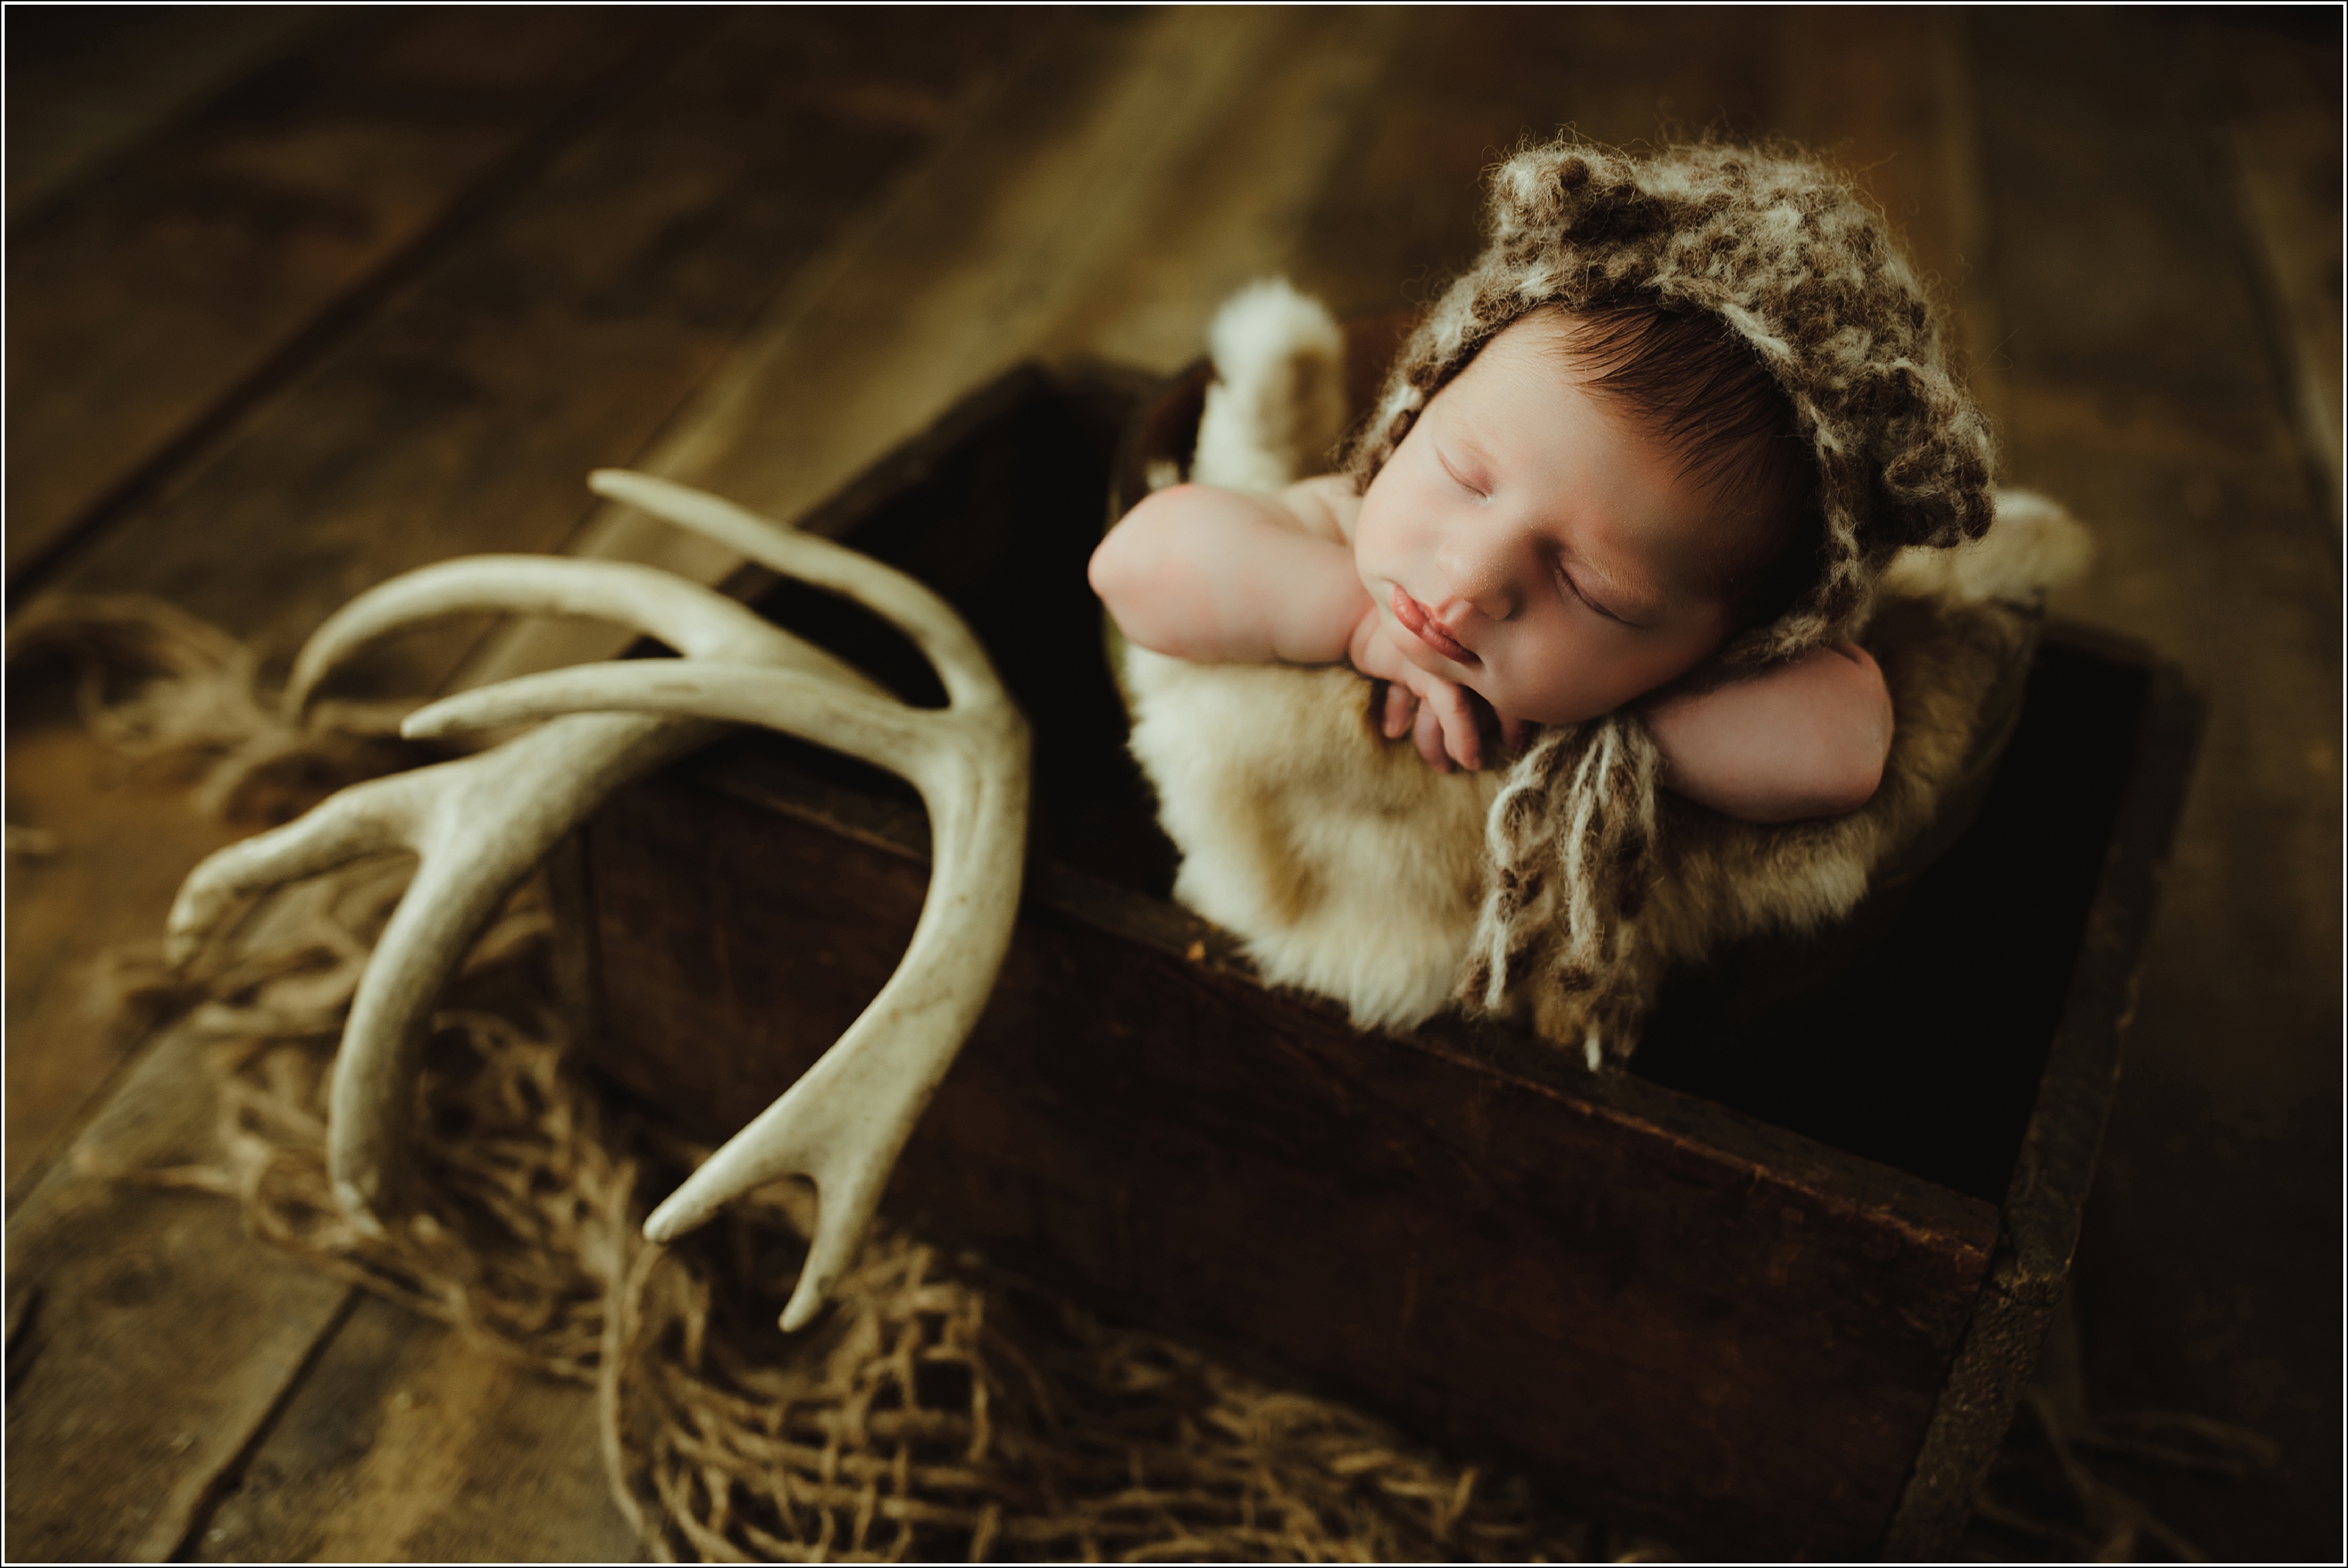 Newborn photographer La Crosse WI Rochester, MN precious newborn photo